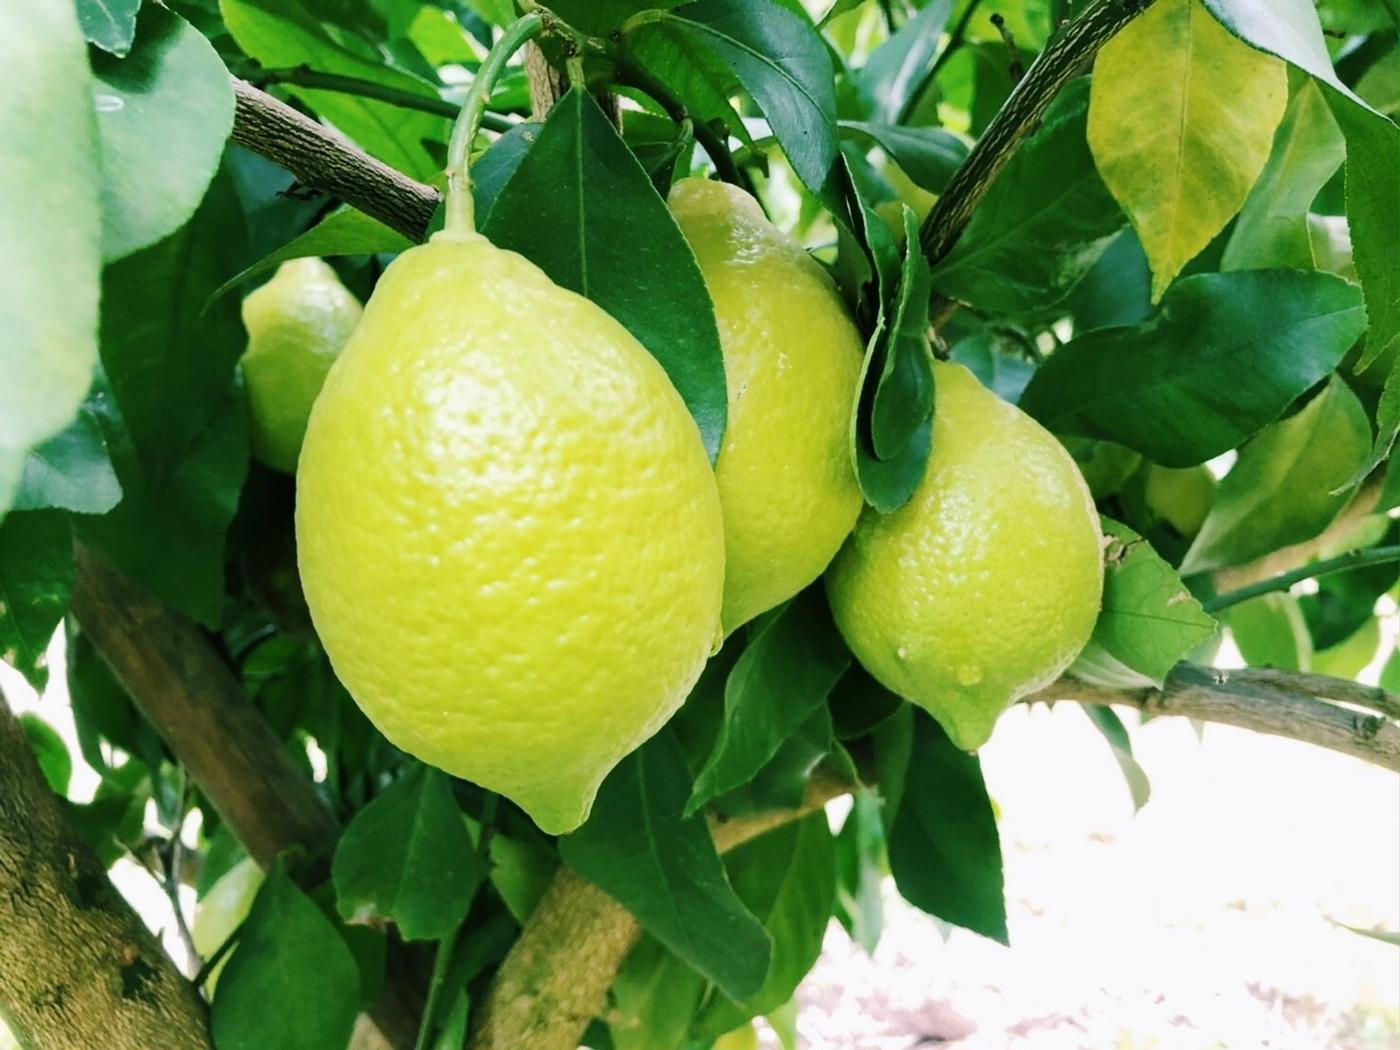 この夏 国産レモン がスーパーから消える 今始めたい レモン仕事 のハウツー教えます トクバイニュース